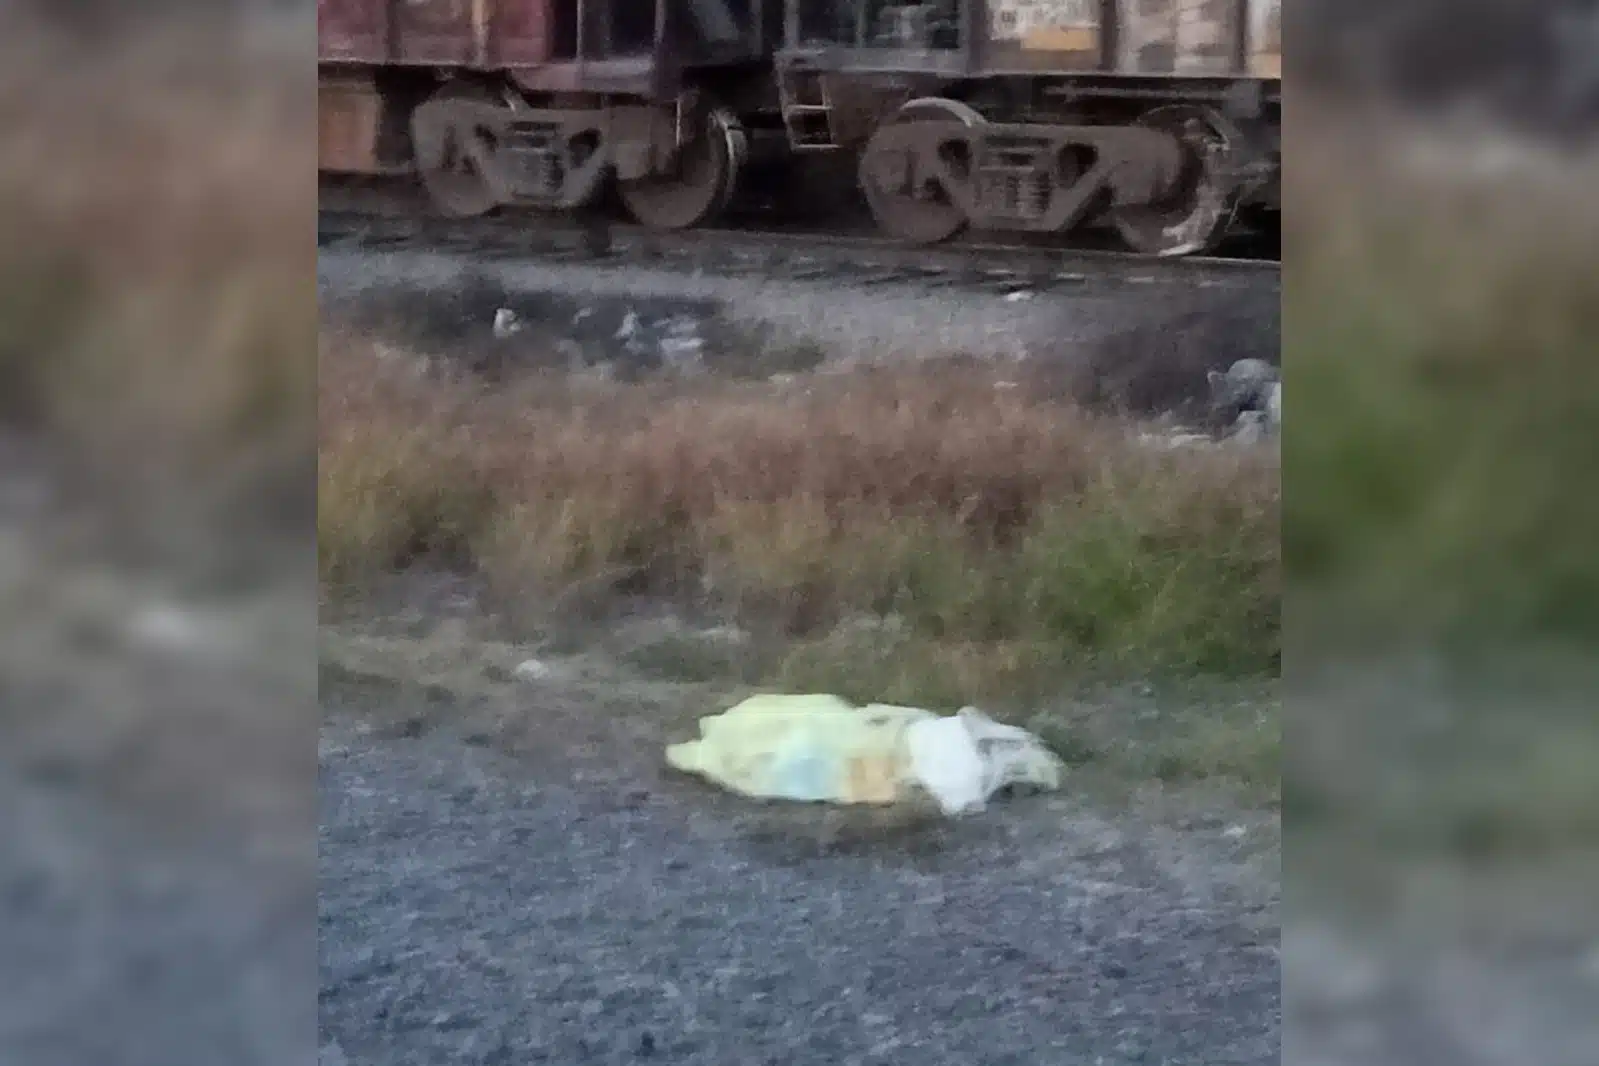 En Nuevo León, pareja de migrantes intenta subir al tren, pero se les cae su bebé y muere